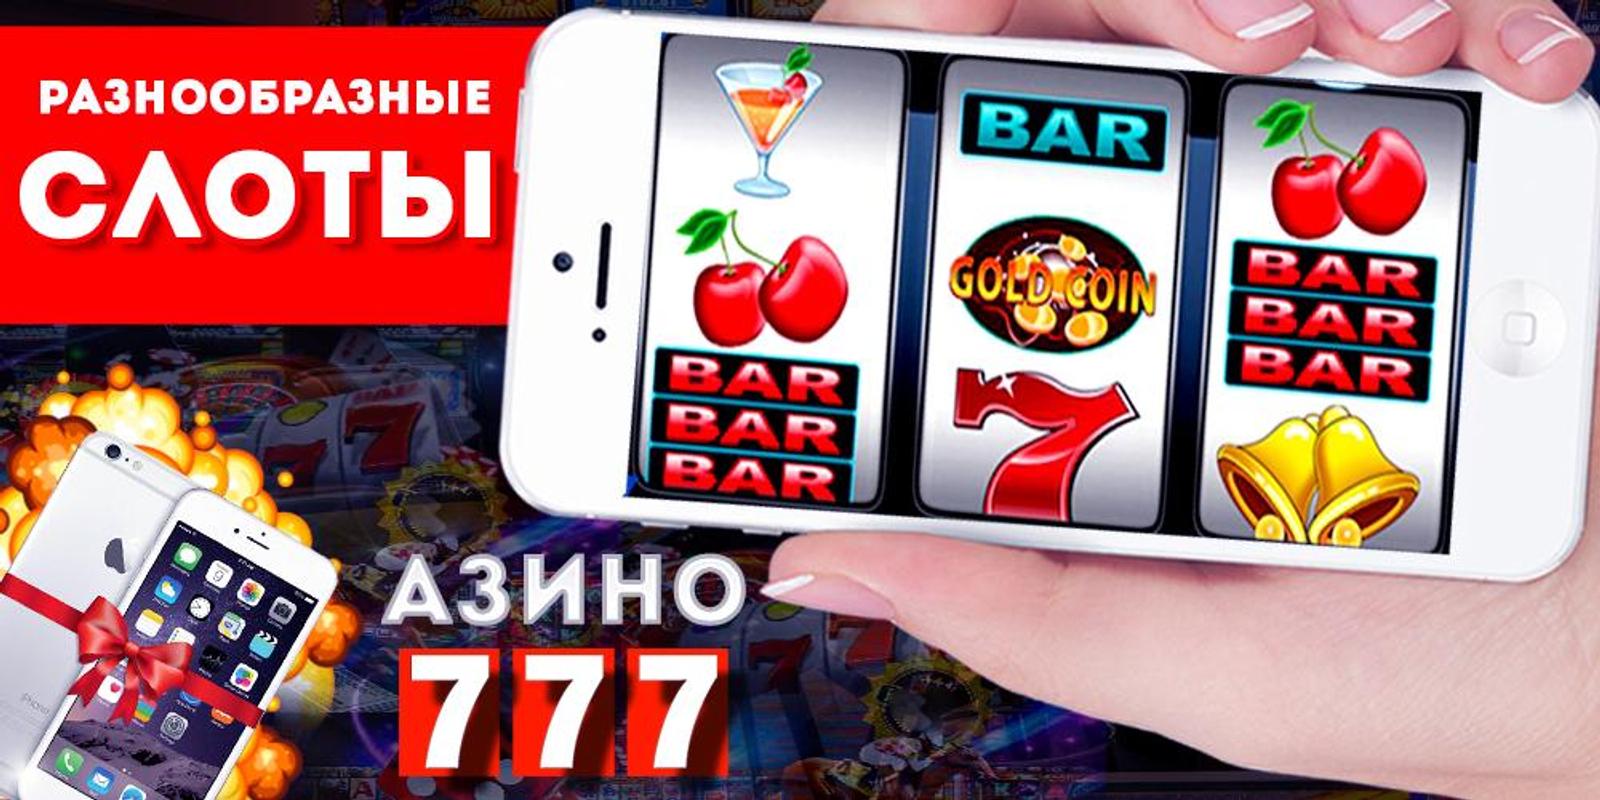 Азино777 мобильная версия mobile casino